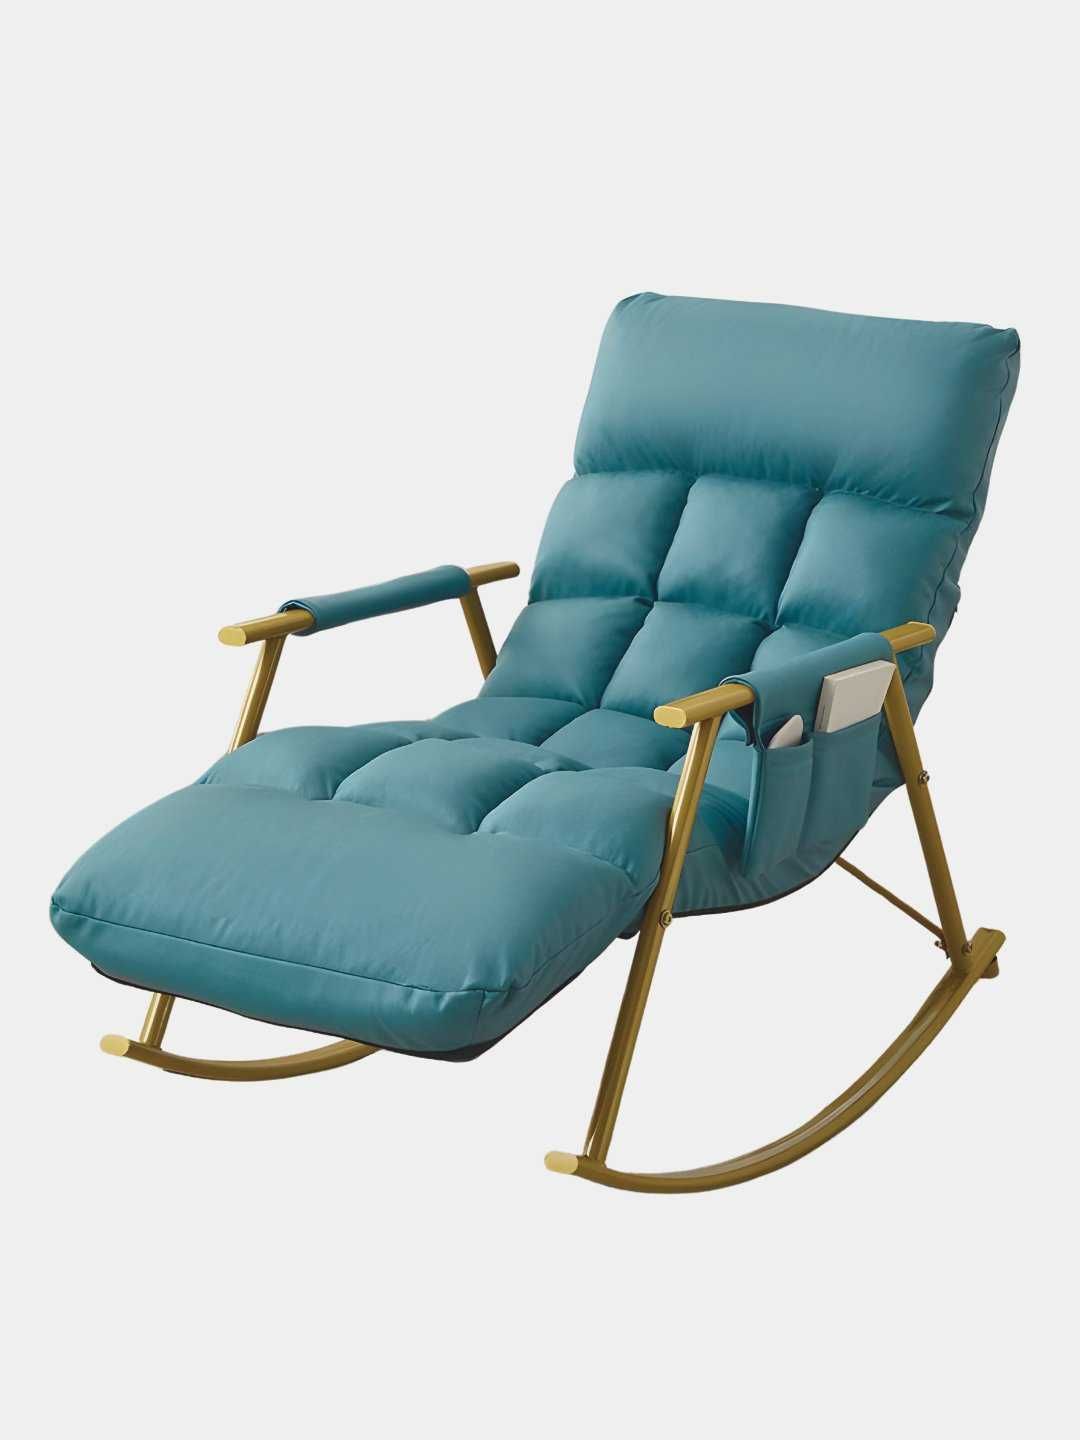 Кресло-качалка для дома и дачи, мягкое кресло для отдыха